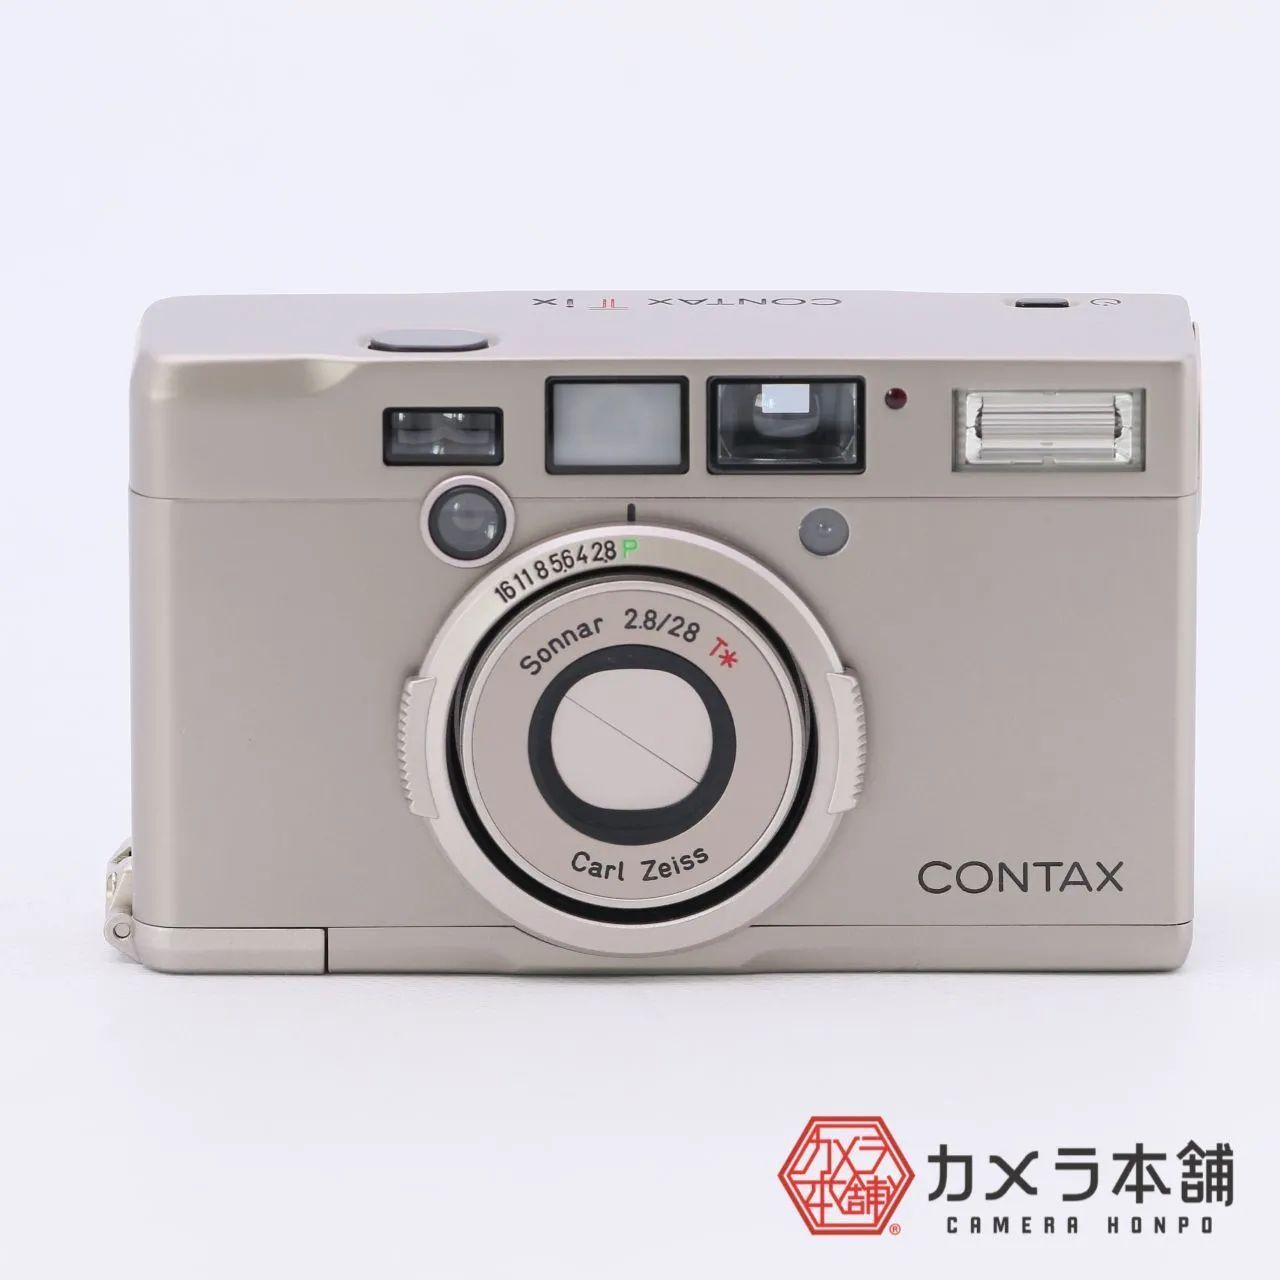 CONTAX Tix フィルムカメラ ケースつき Tixキット CC-67 - メルカリ